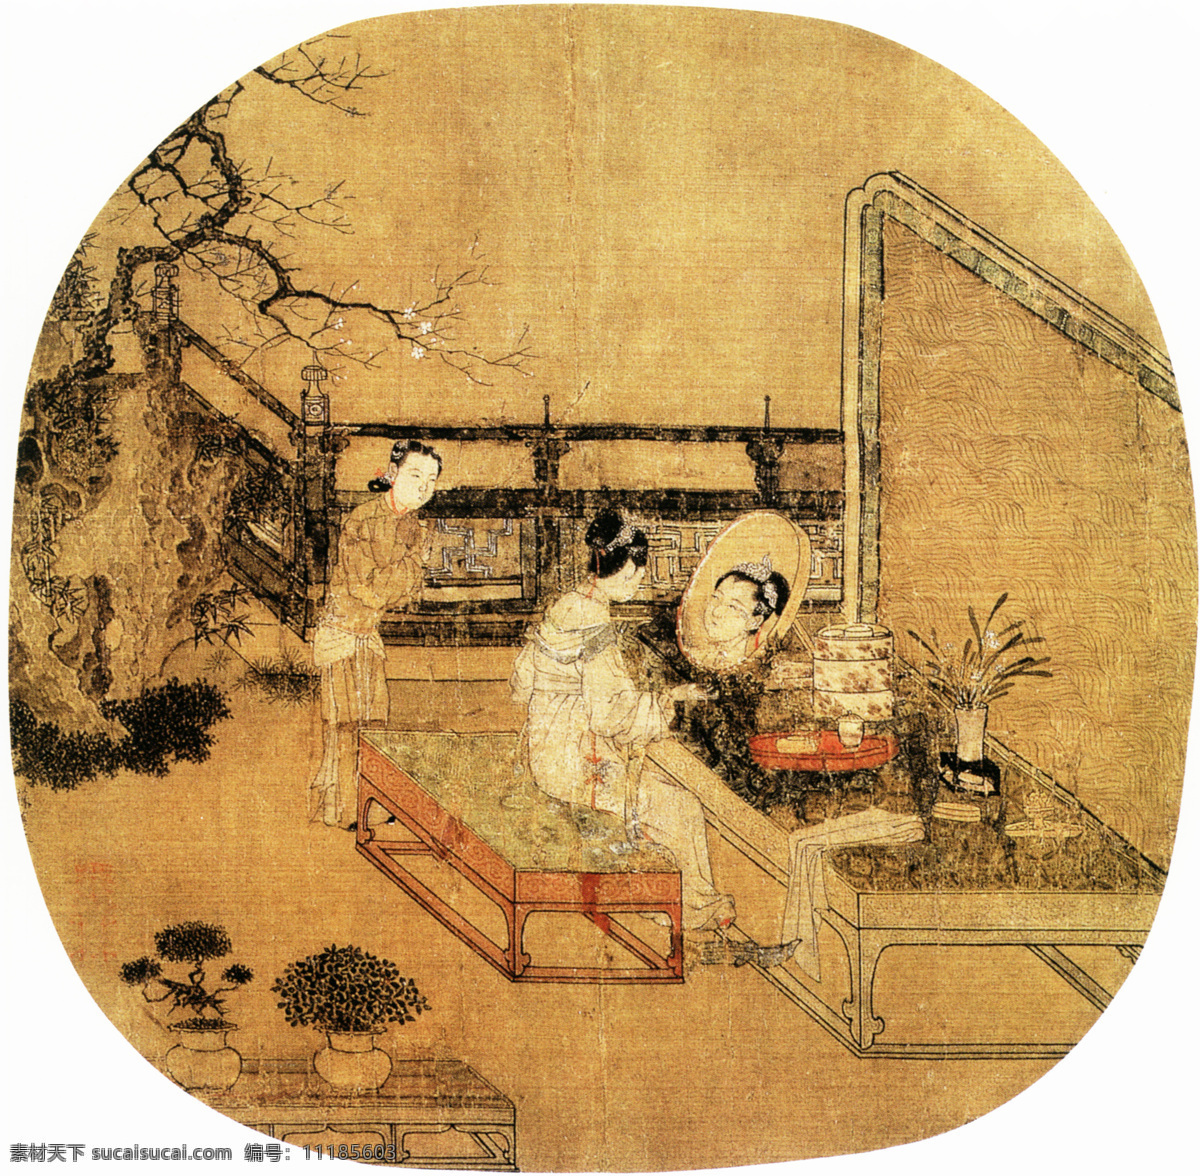 妆靓仕女图 镜片 中国 古画 中国古画 设计素材 镜片名画 古典藏画 书画美术 白色